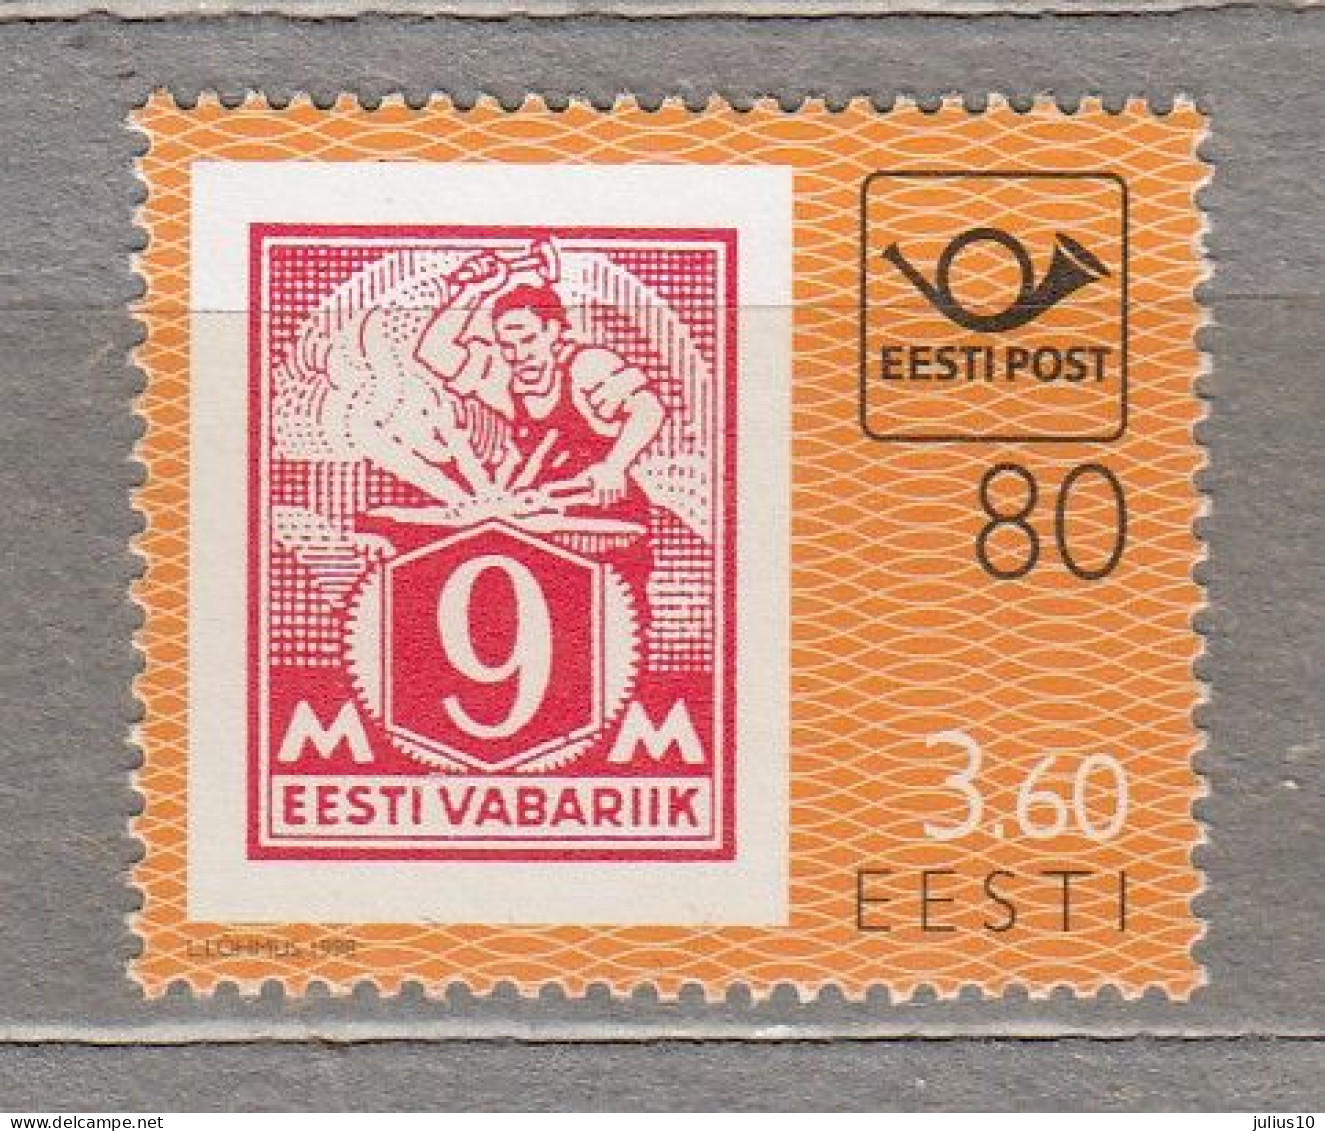 ESTONIA 1998 Stamps On Stamps MNH(**) Mi 334 # Est313 - Estonia